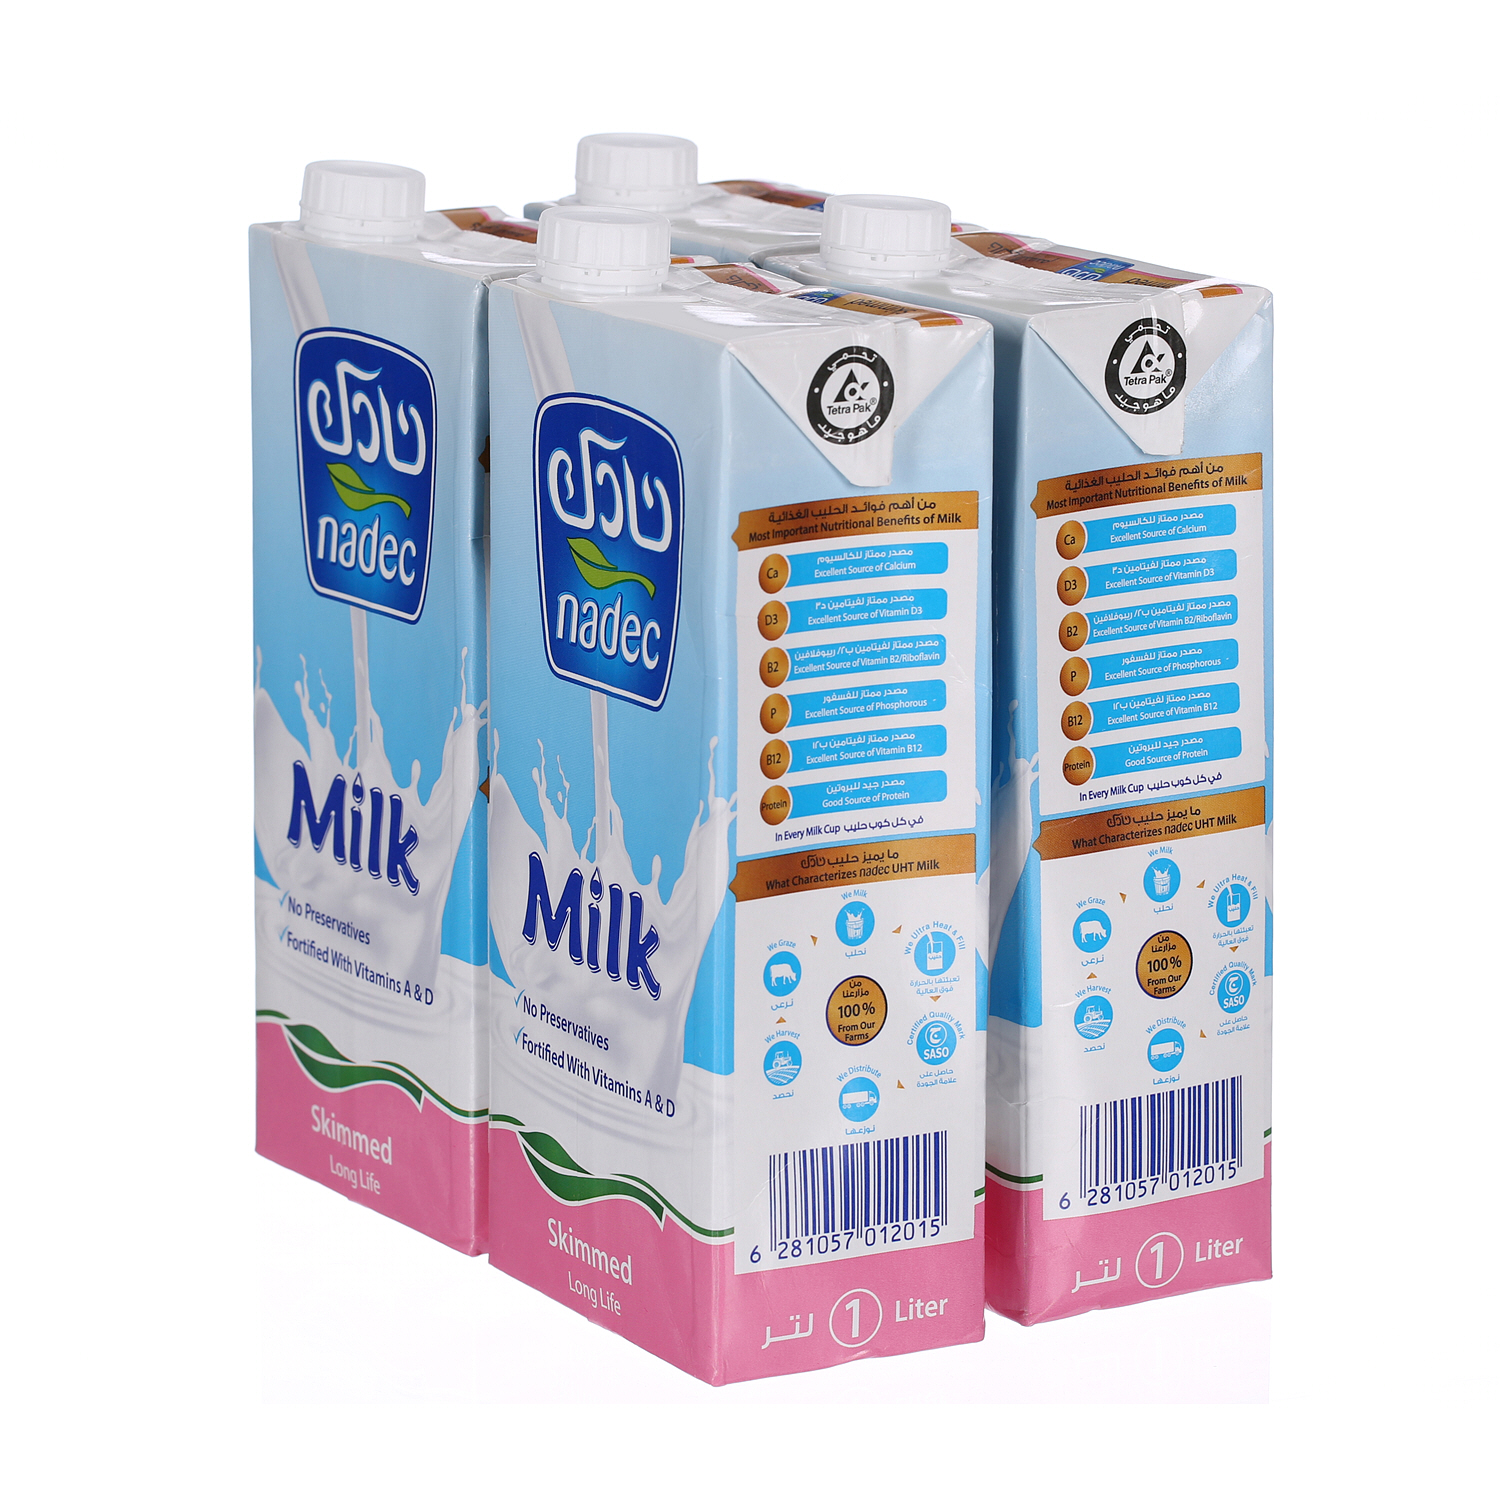 Nadec Long Life Milk Ski mmed 1 L × 4 Pack